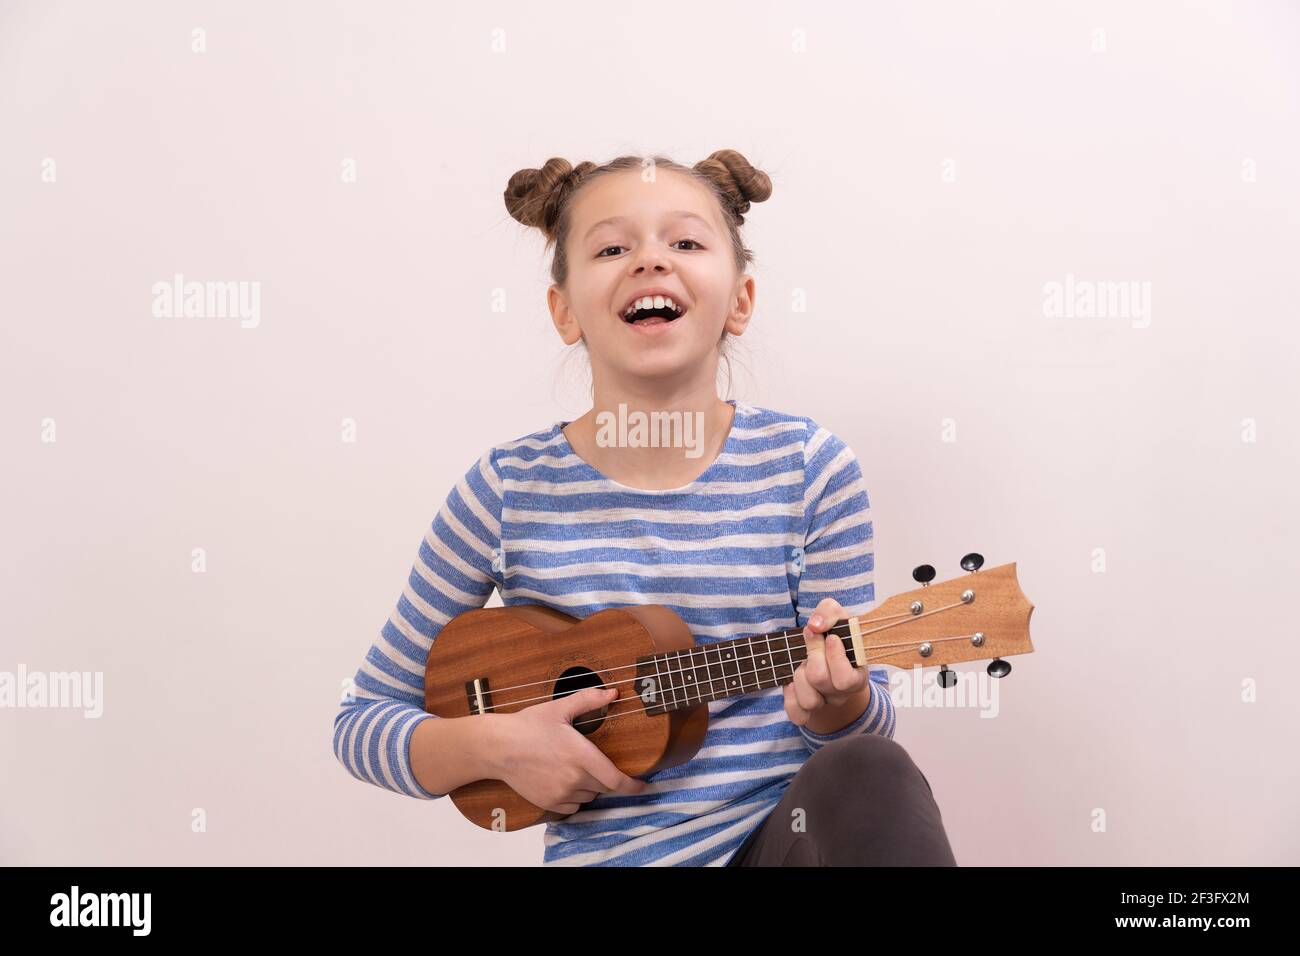 La ragazza canta e suona l'ukulele. Il bambino ride, si pone per la macchina fotografica e gode la musica. Imparare a giocare ukuleles Foto Stock